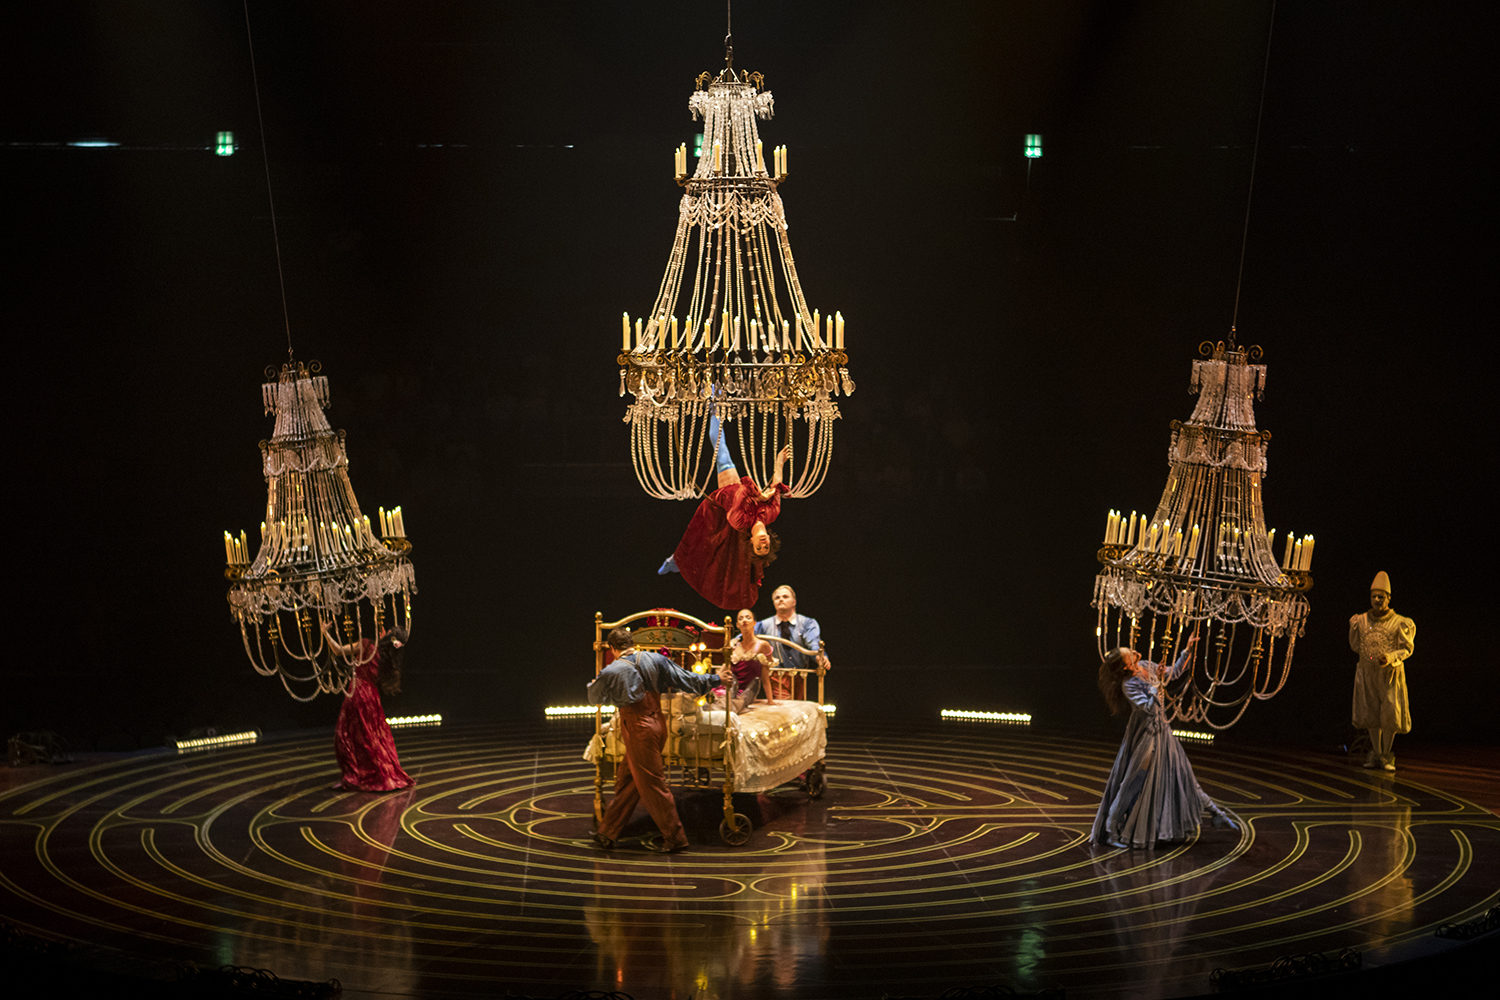 Cirque du Soleil vuelve a México con el espectacular show "Corteo" 2